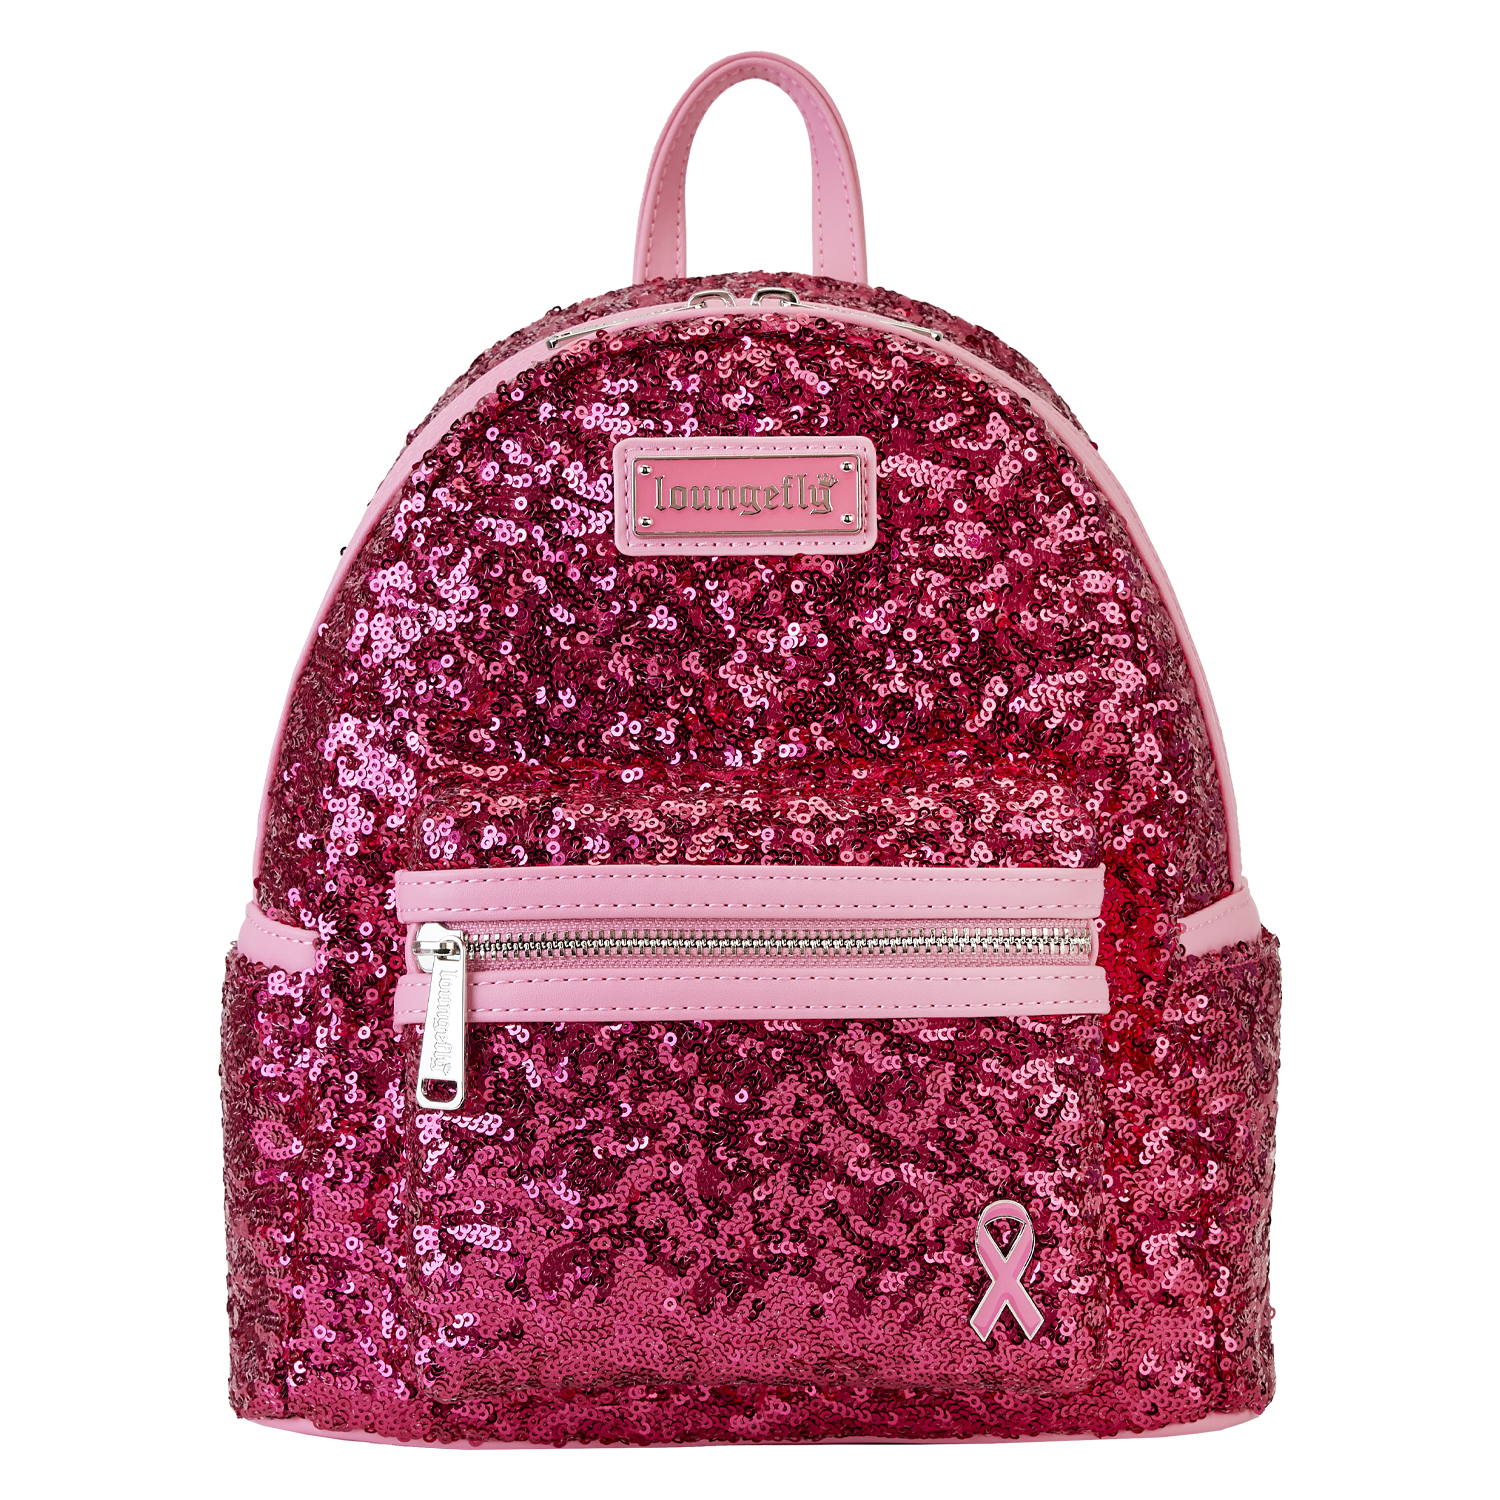 pink backpack bag